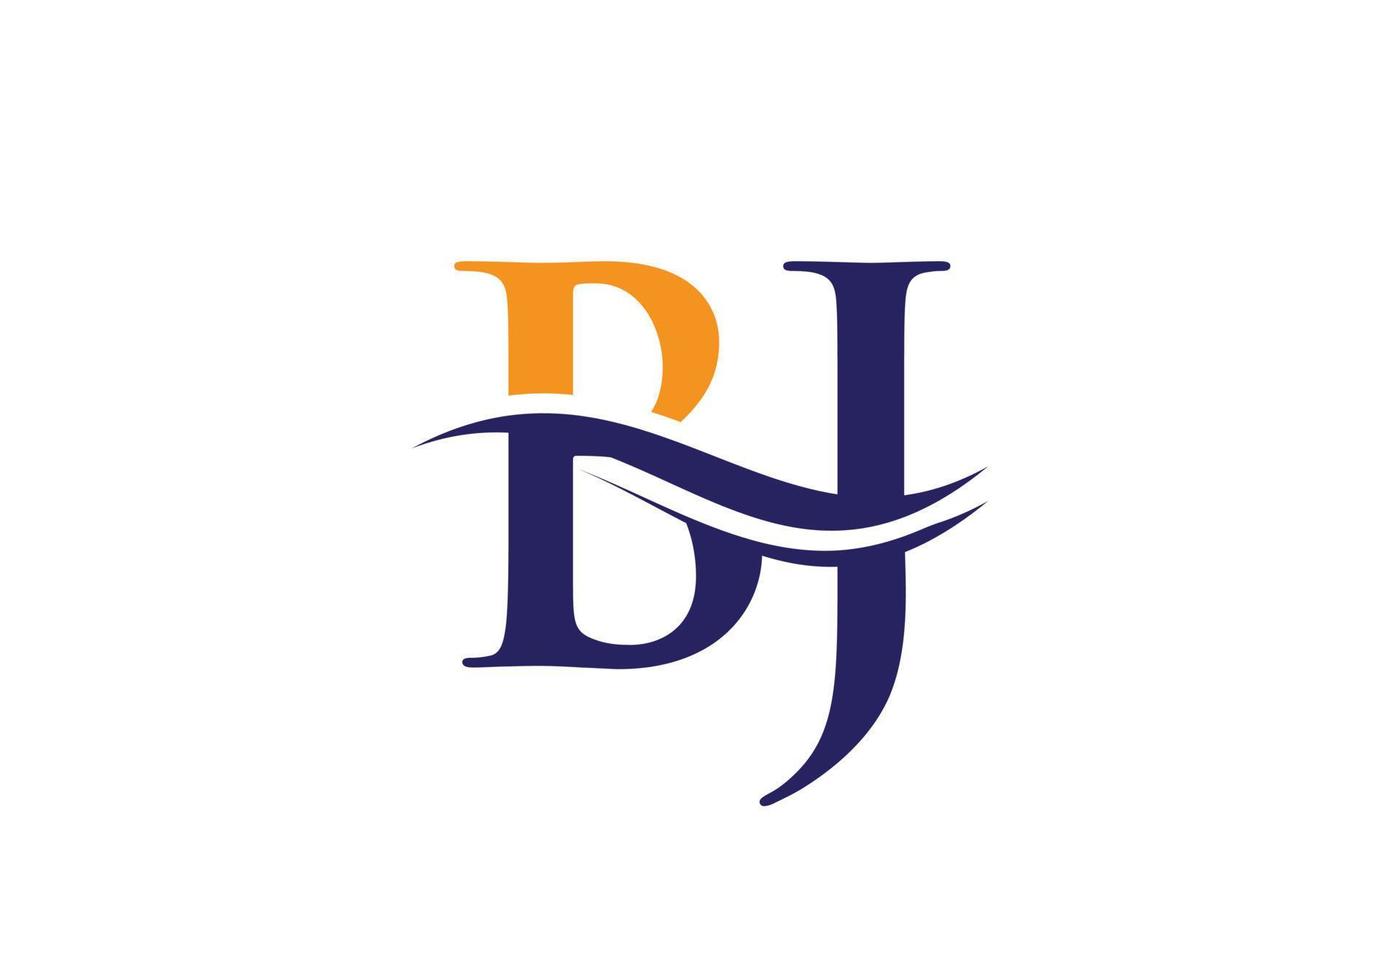 plantilla de vector de diseño de logotipo de empresa de letra bj inicial con una moda mínima y moderna. diseño de logotipo bj para empresas